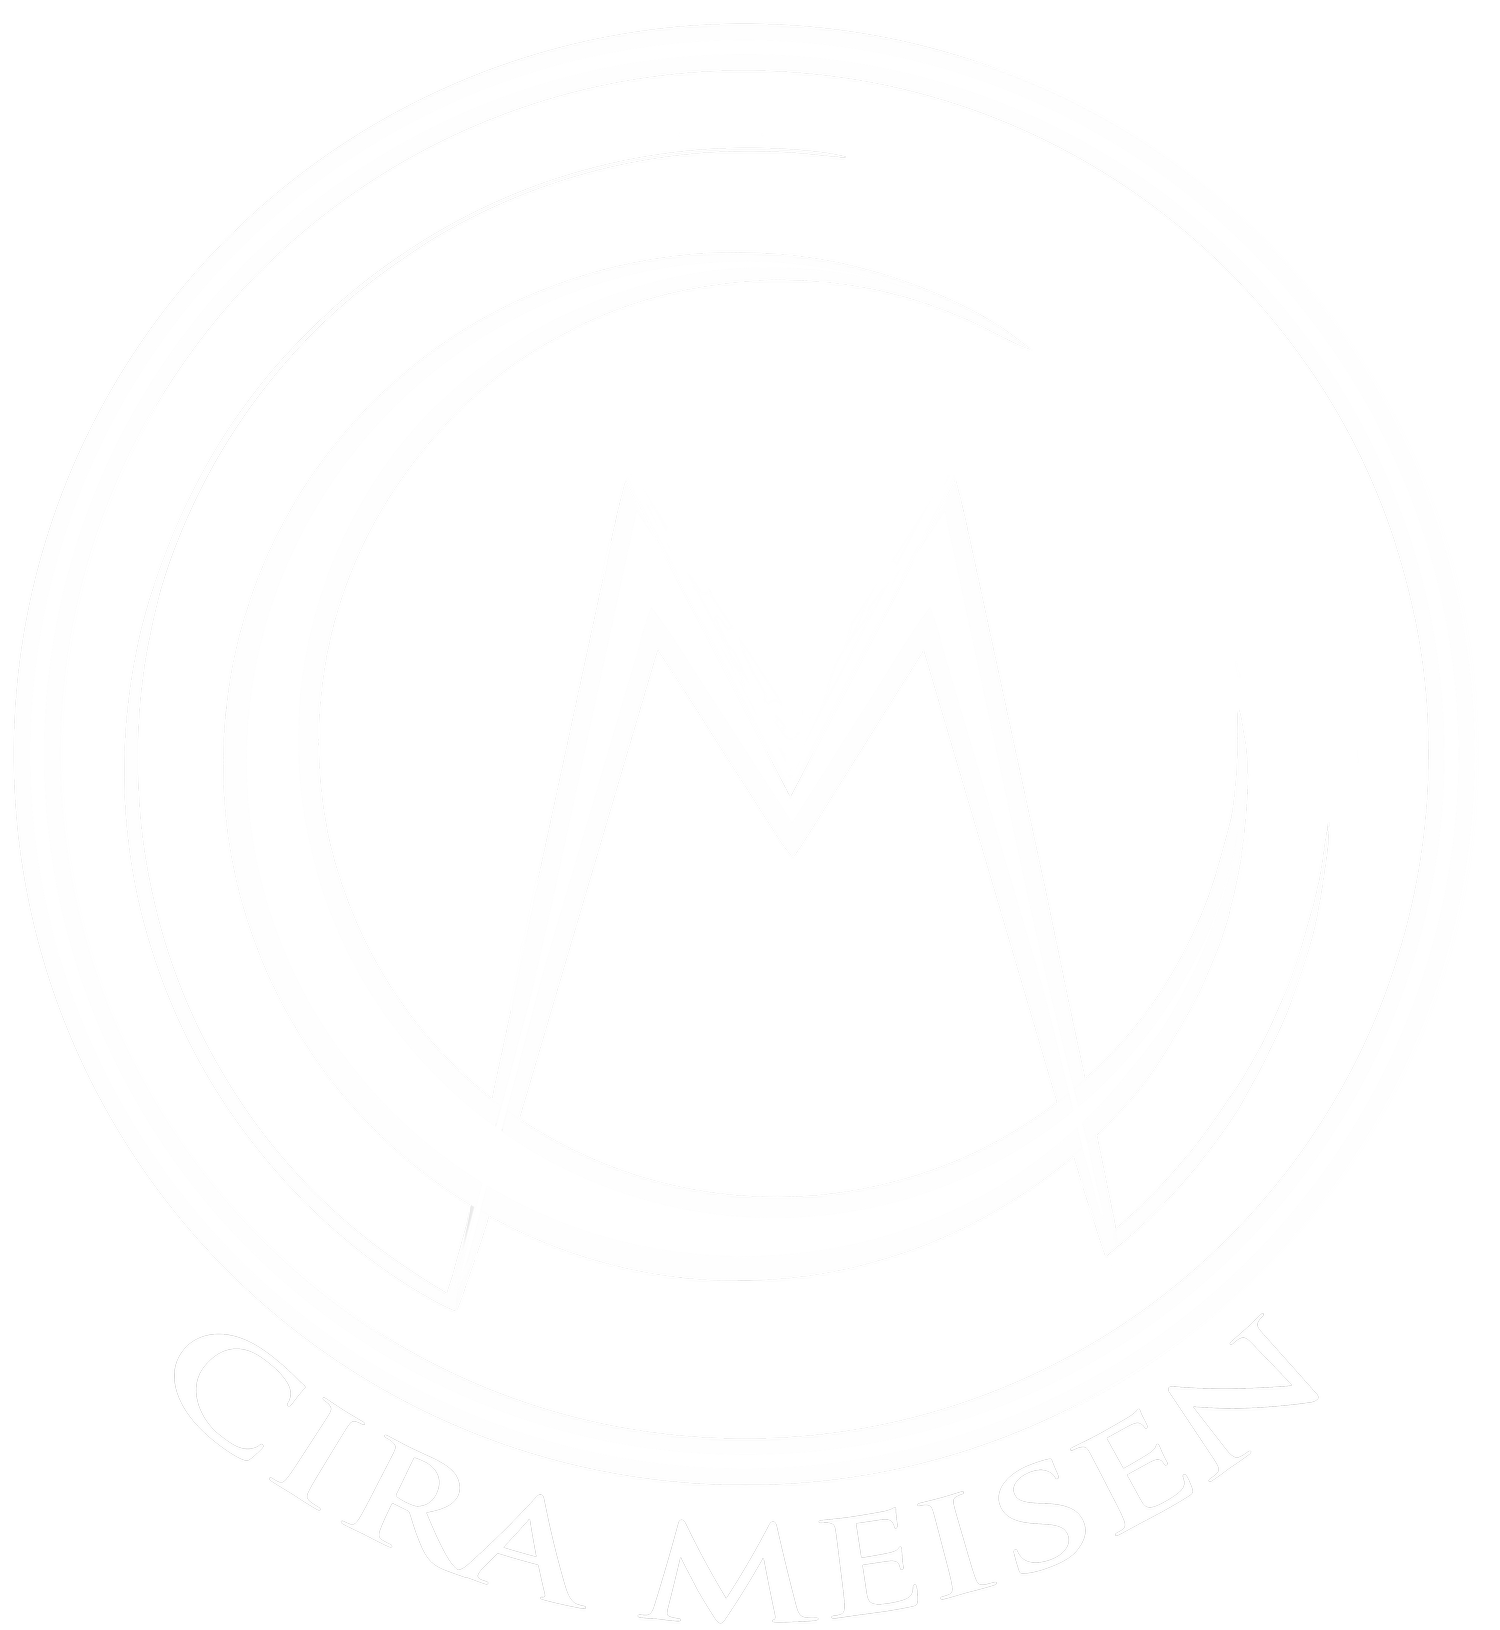 Cira Meisen 